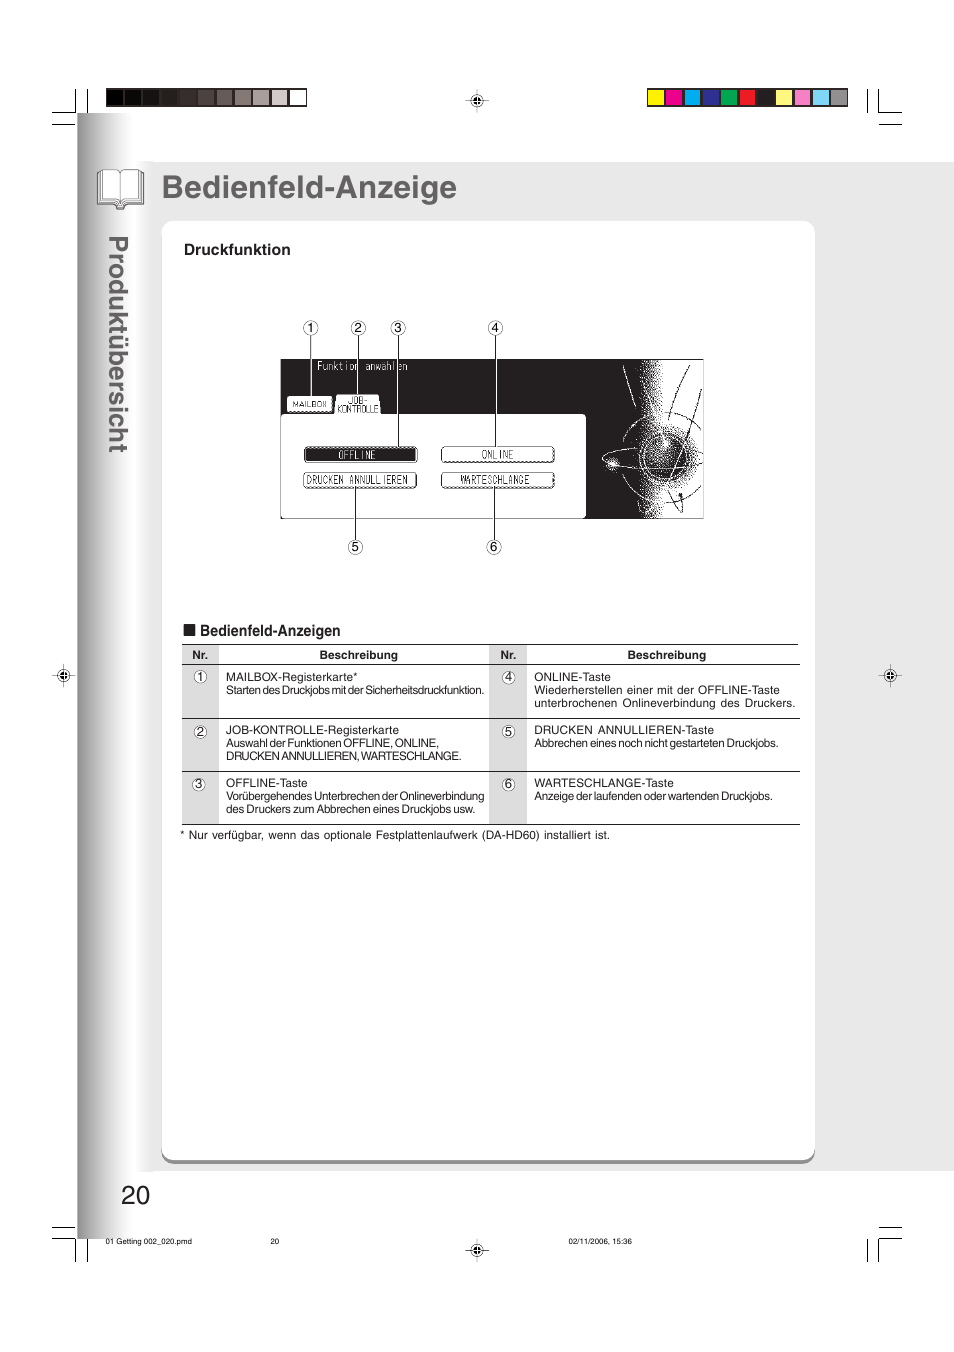 Druckfunktion, Bedienfeld-anzeige, Pr oduktüber sic ht 20 | Panasonic DP8035 Benutzerhandbuch | Seite 20 / 84